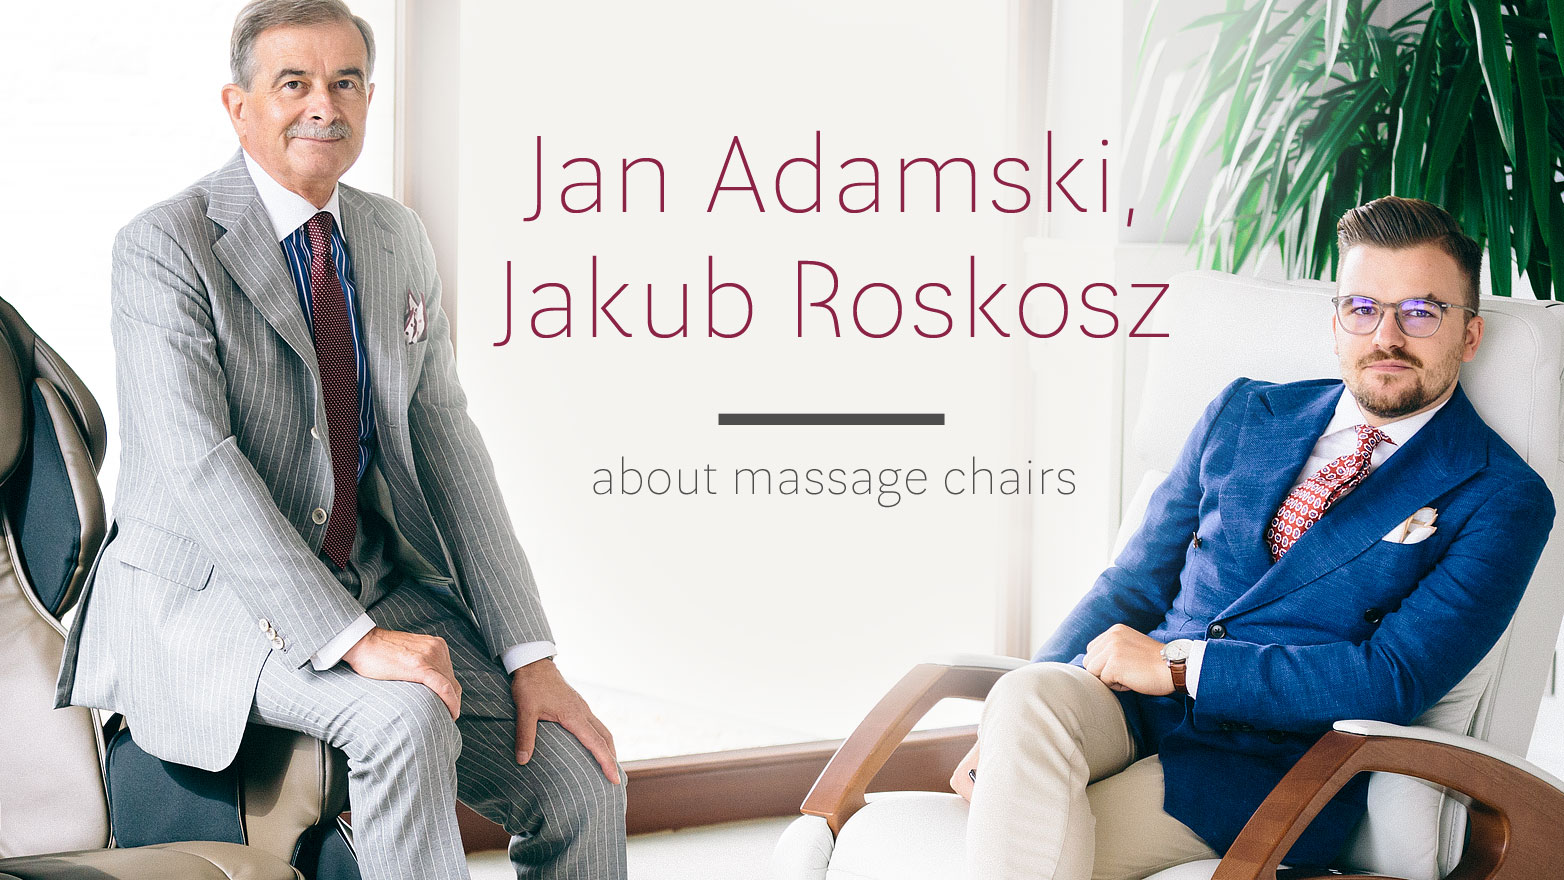 Jan Adamski and Jakub Roskosz about massage chairs